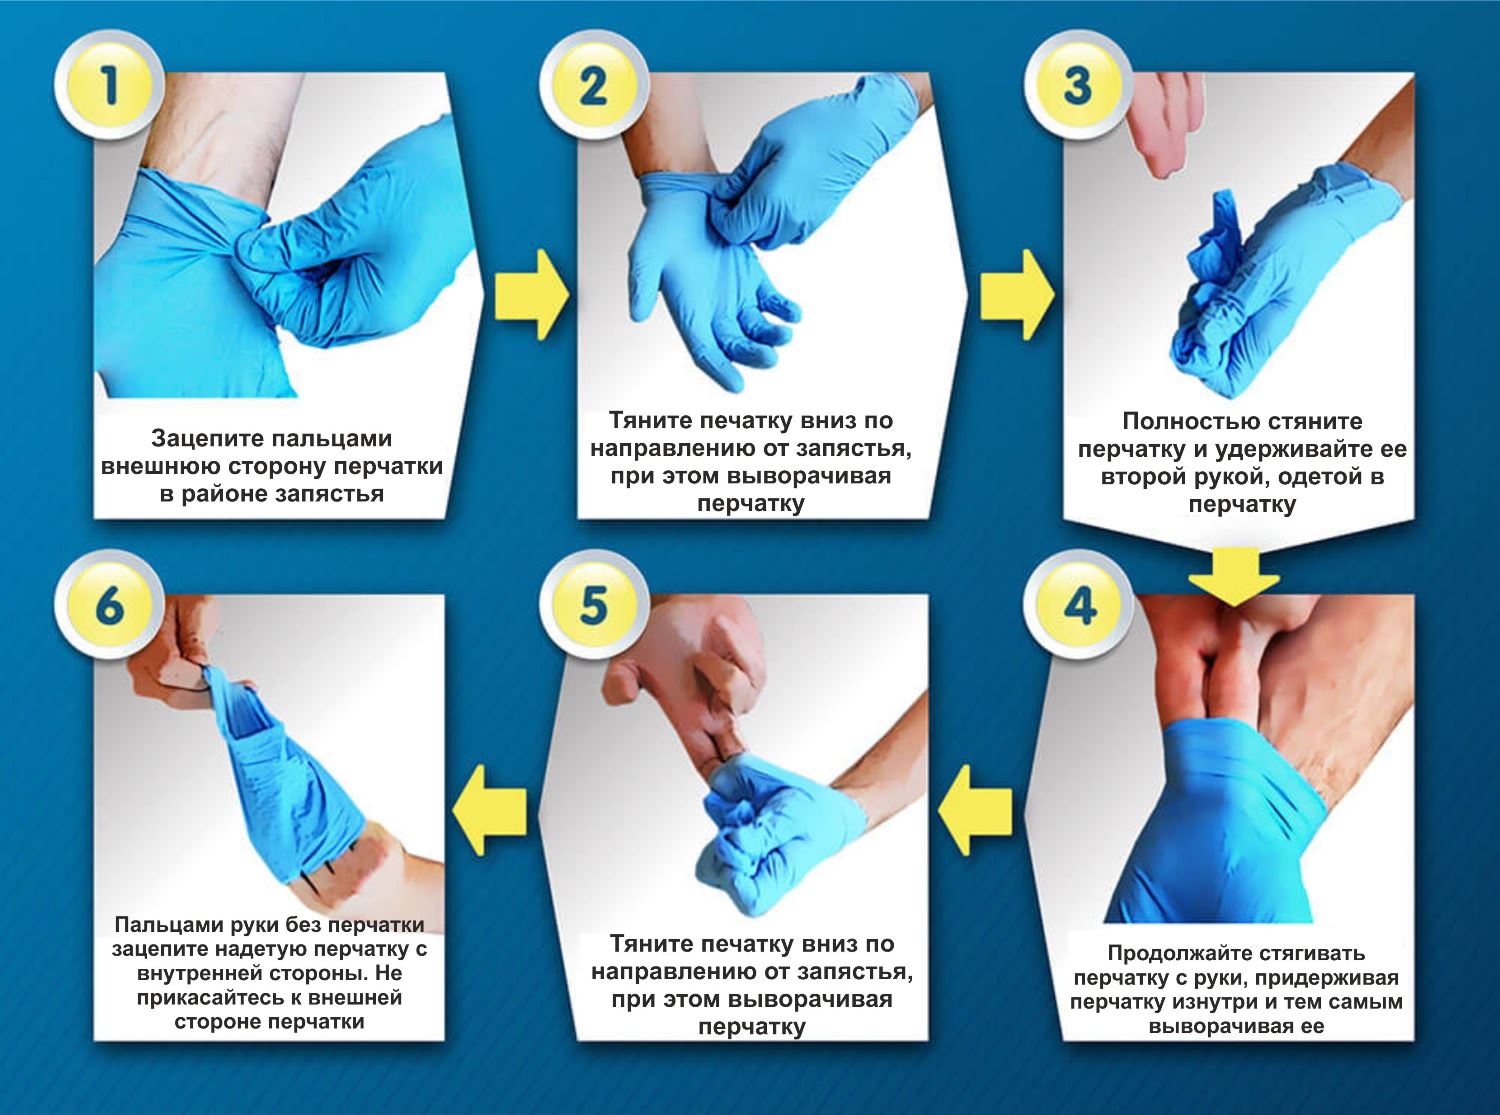 Алгоритм стерильных перчаток. Алгоритм снятия нестерильных перчаток. Надеть стерильные перчатки алгоритм. Как правильно одевать перчатки медицинские. Одевание стерильных перчаток алгоритм.